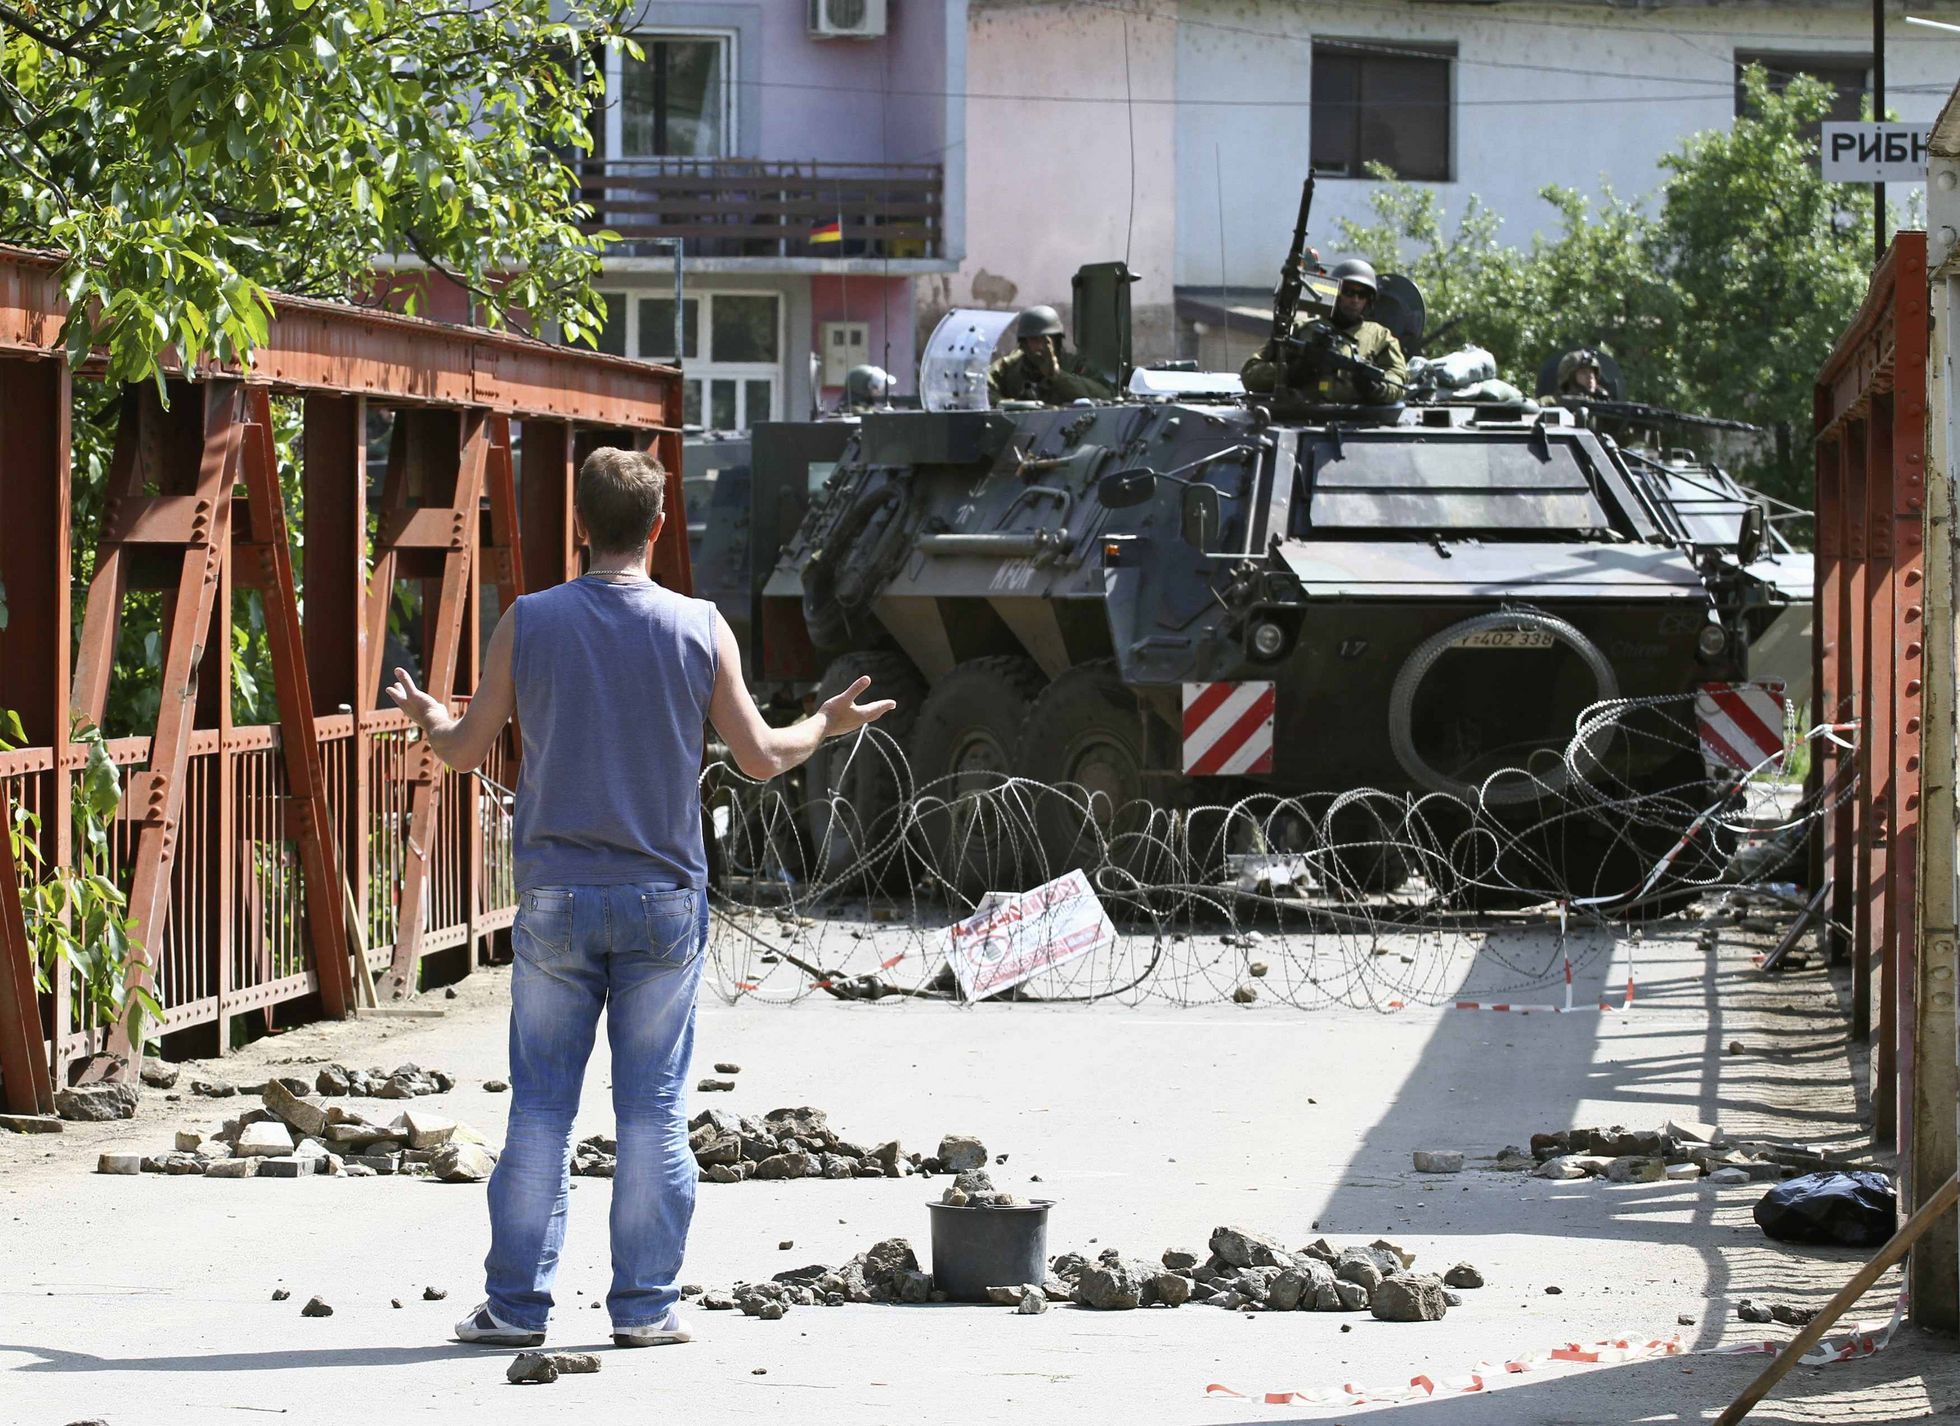 Ein Kosovo-Serbe steht im Juni 2012 an einer Straßenblockade in Zvecan im Norden des Kosovo einem Transportpanzer Fuchs der Bundeswehr gegenüber. Foto: pictue alliance/Reuters/Stringer